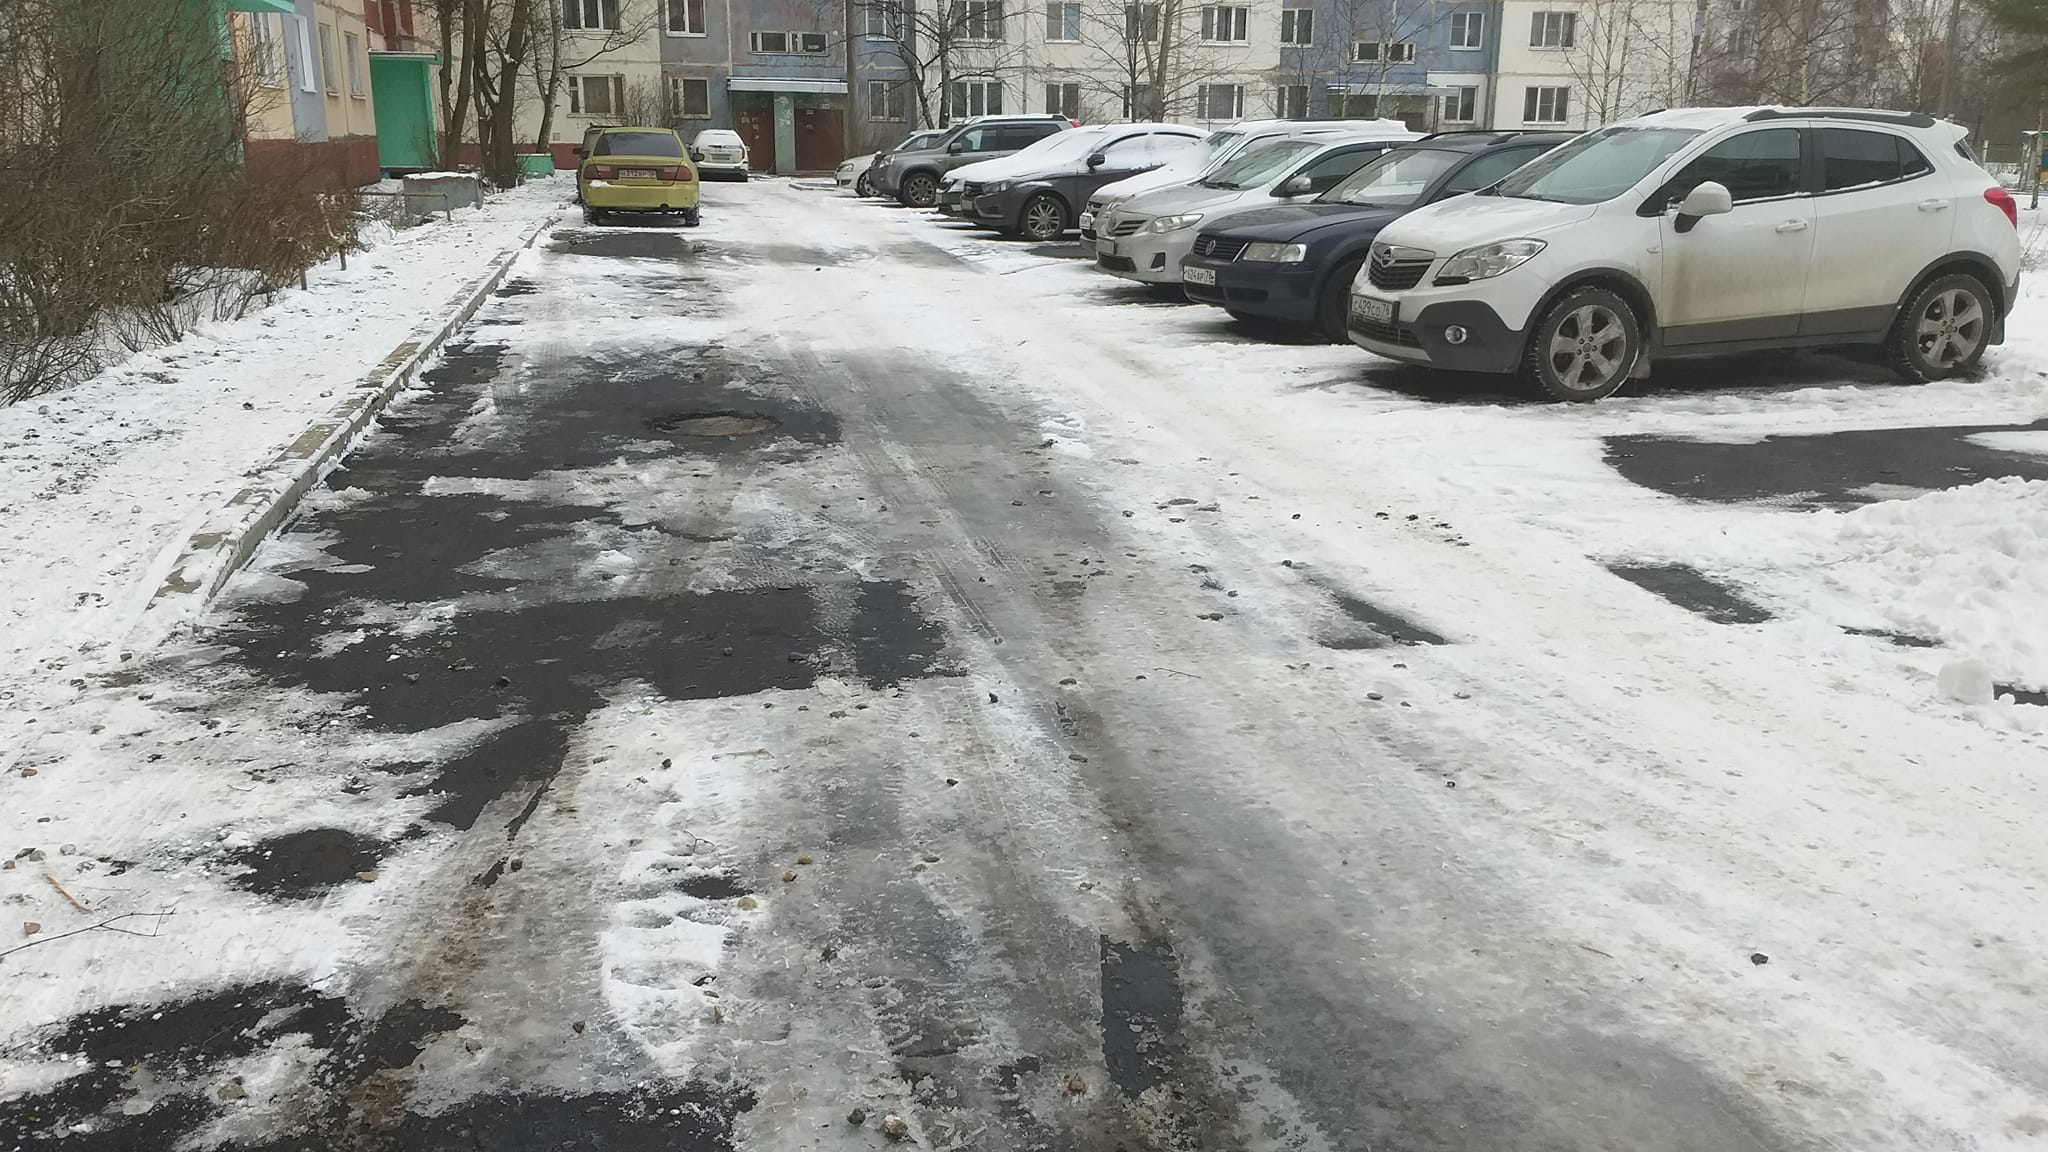 Эльхан Мардалиев: Раньше городские власти закапывали бюджетные деньги «в песок», а теперь уже наловчились и в снег!